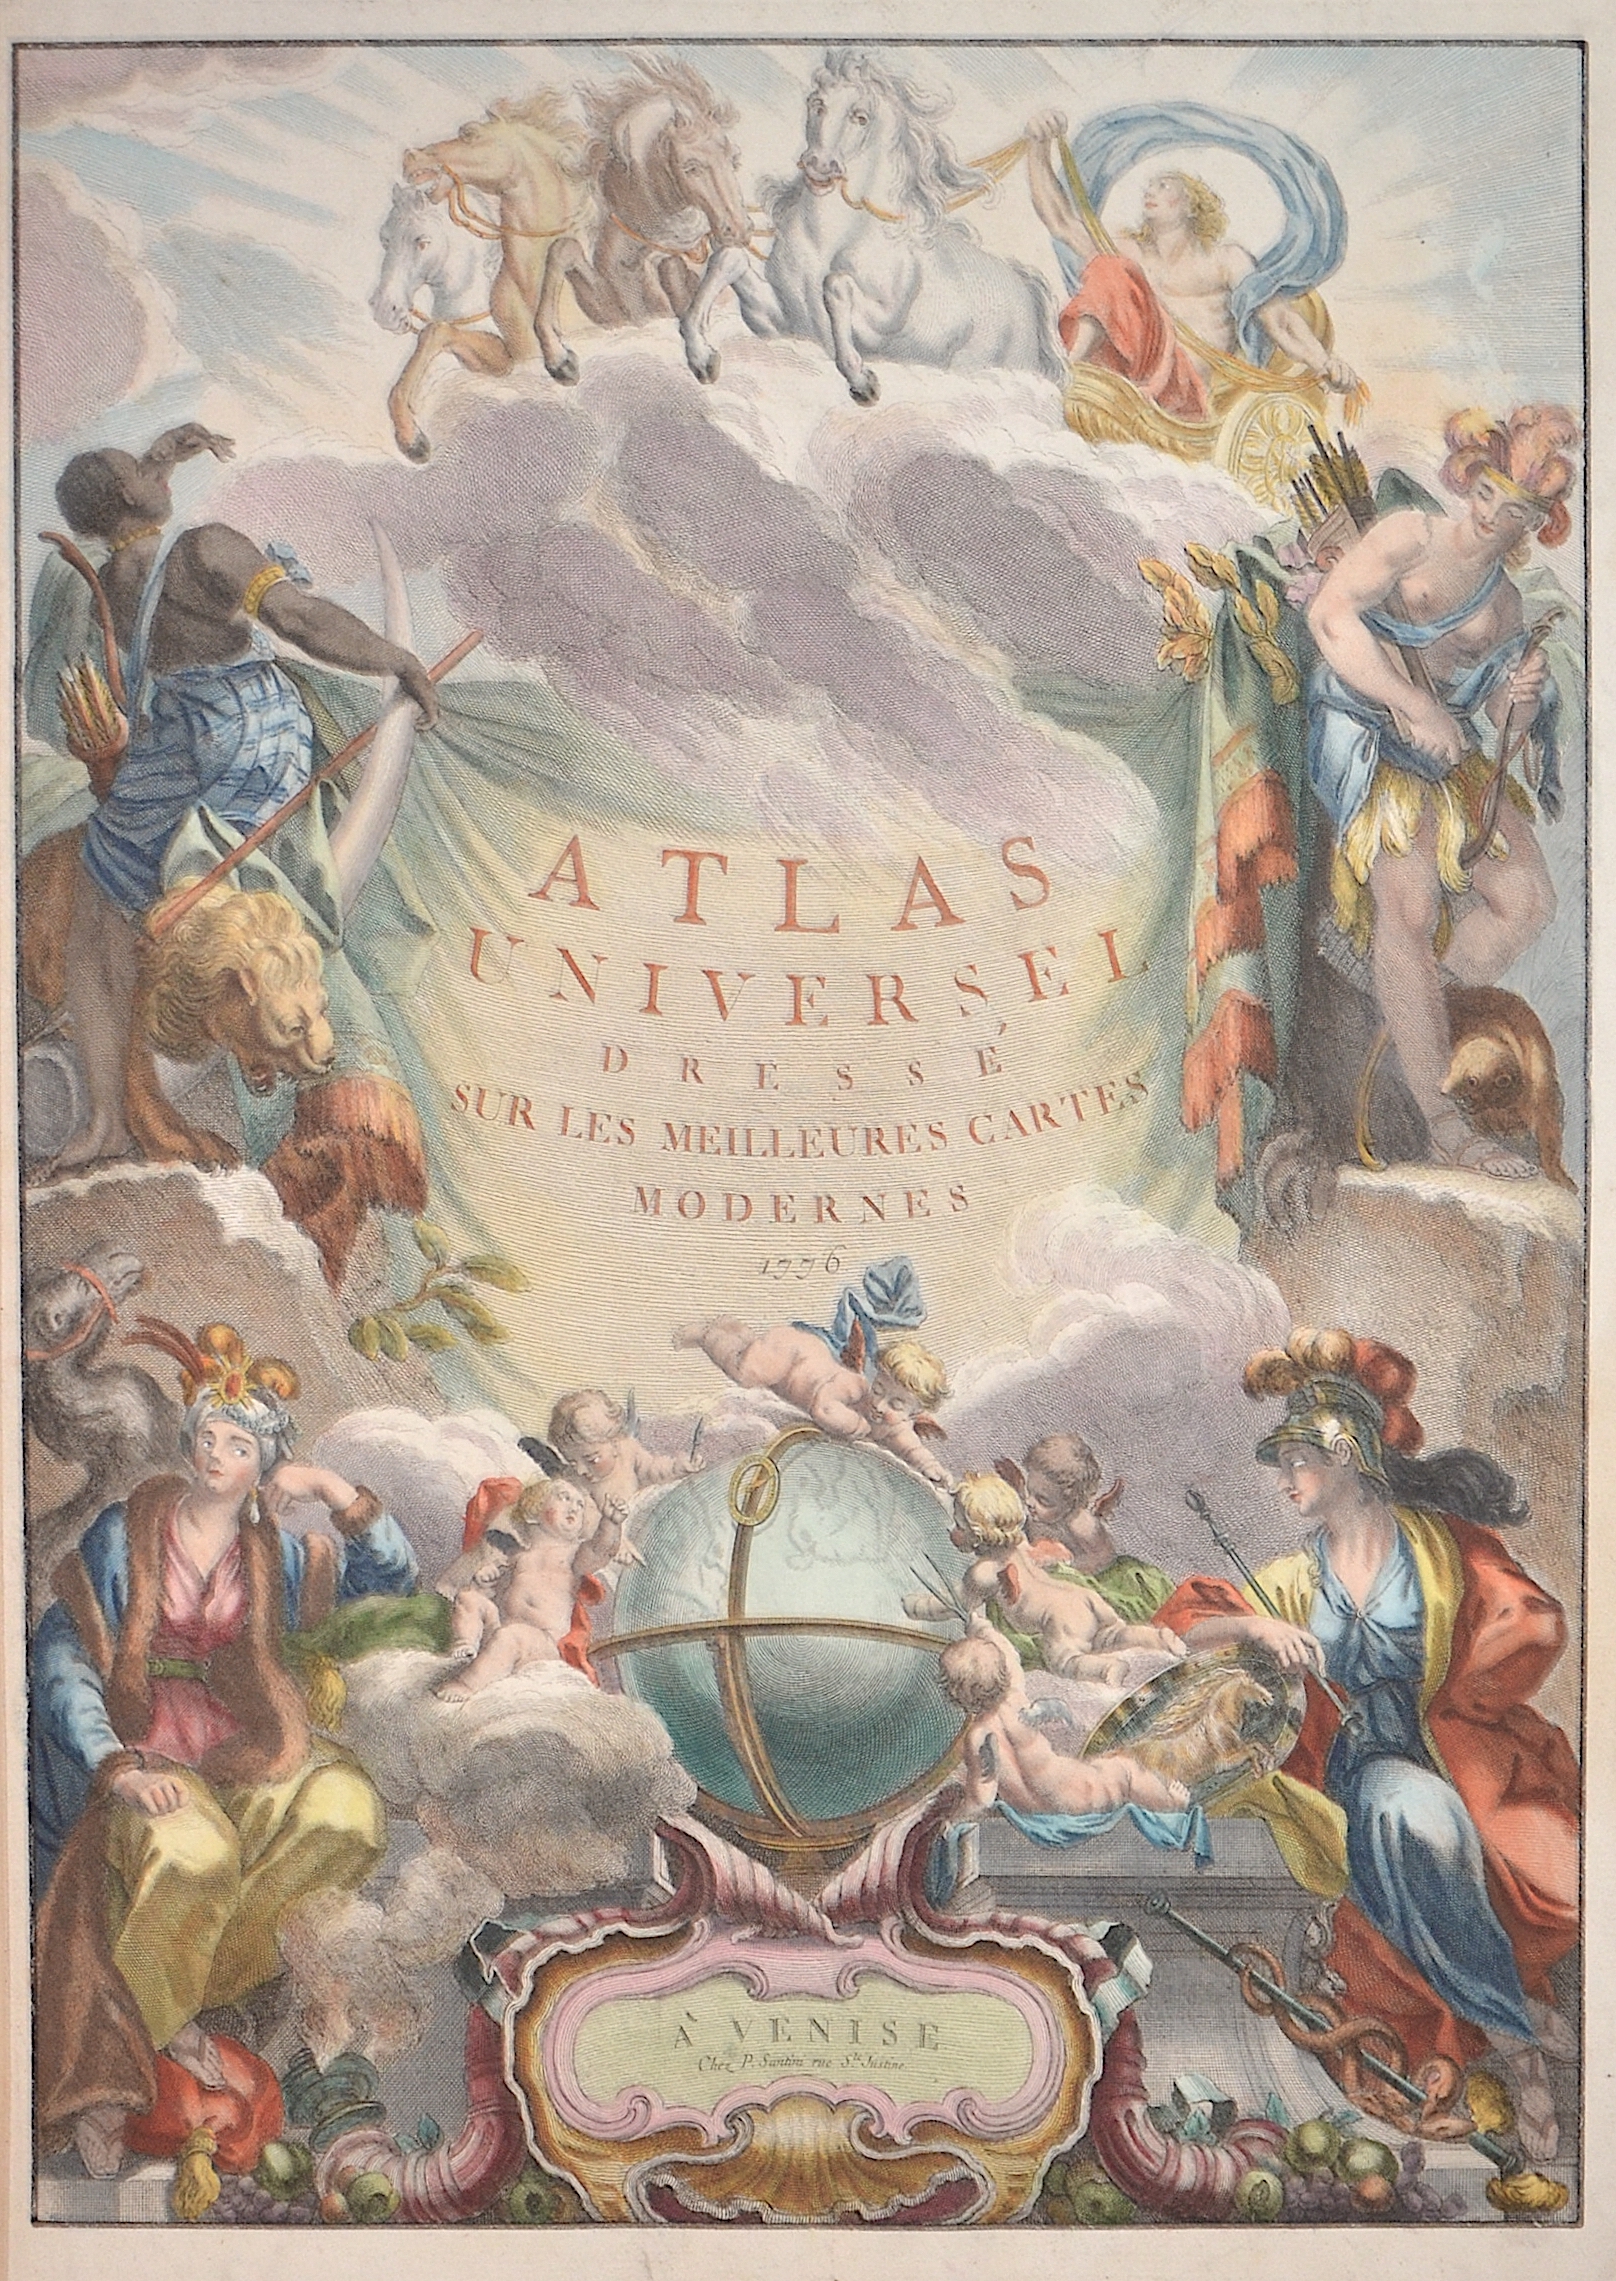 Santini Francois und Paolo Atlas Universel dresse sur les Meilleures Cartes Modernes 1776.